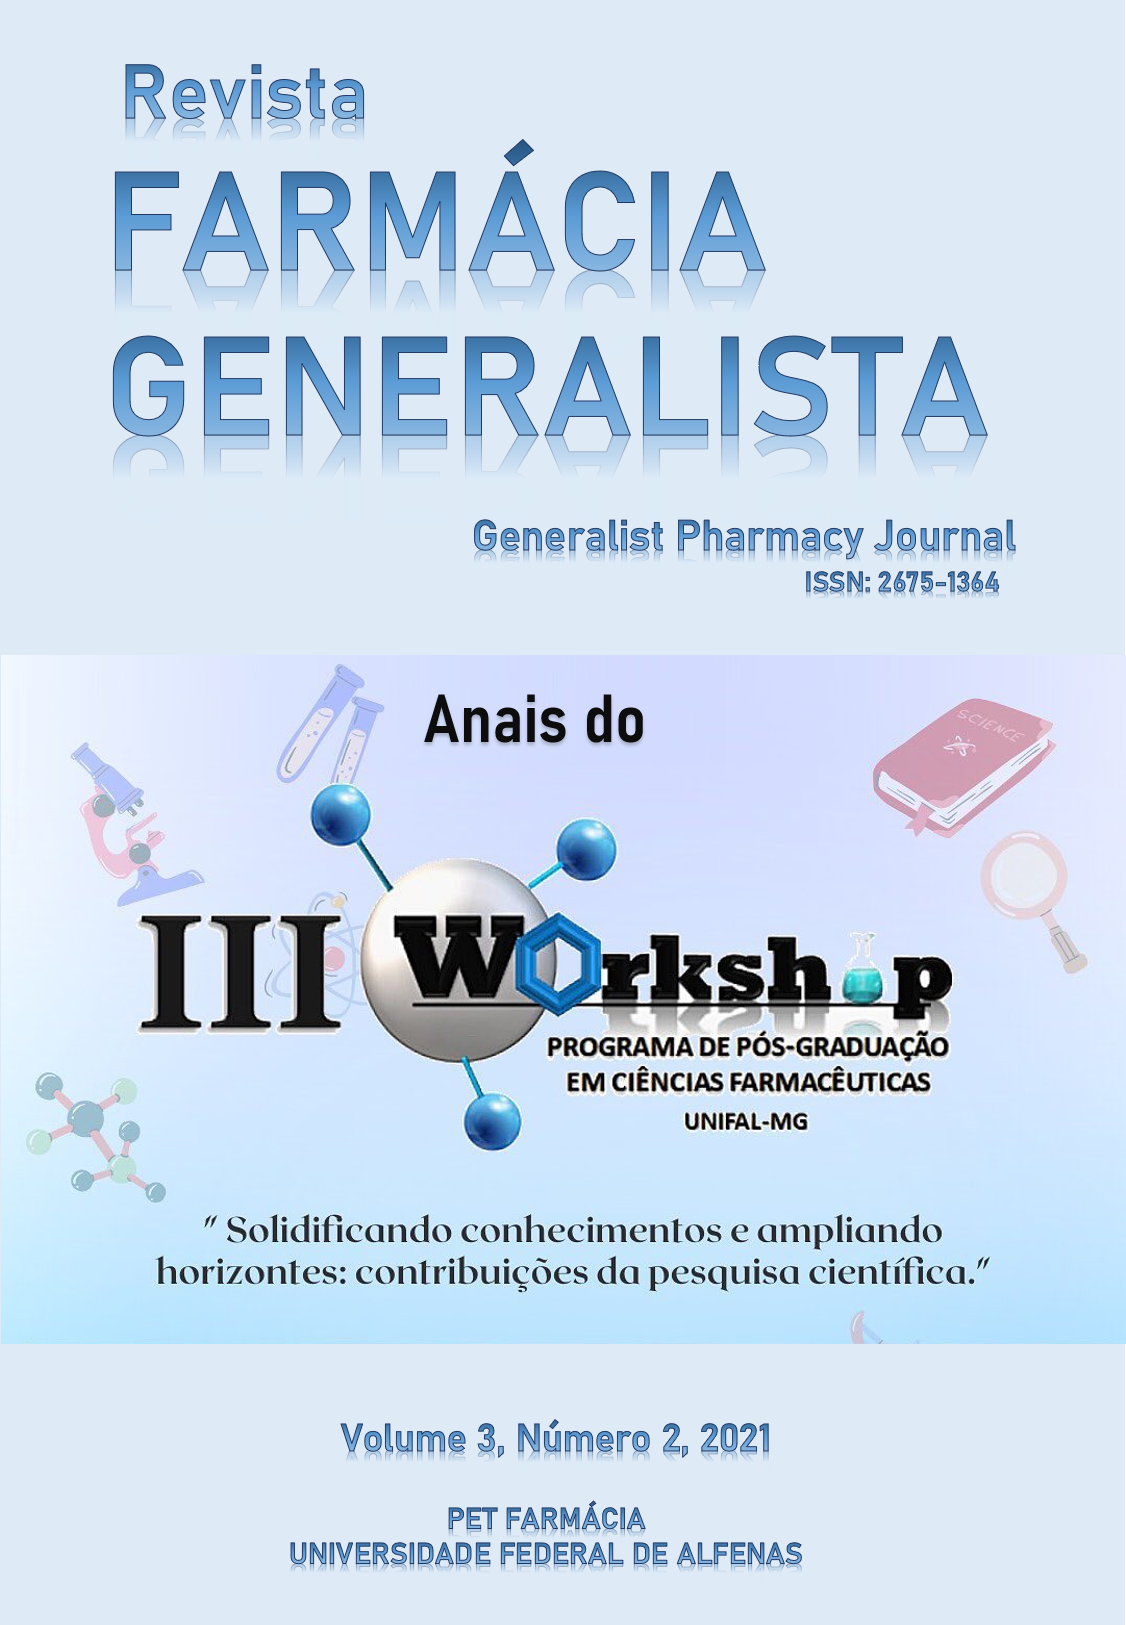 					View Vol. 3 No. 2 (2021): Anais do III Workshop do Programa de Pós-Graduação de Ciências Farmacêuticas (PPGCF) Universidade Federal de Alfenas
				